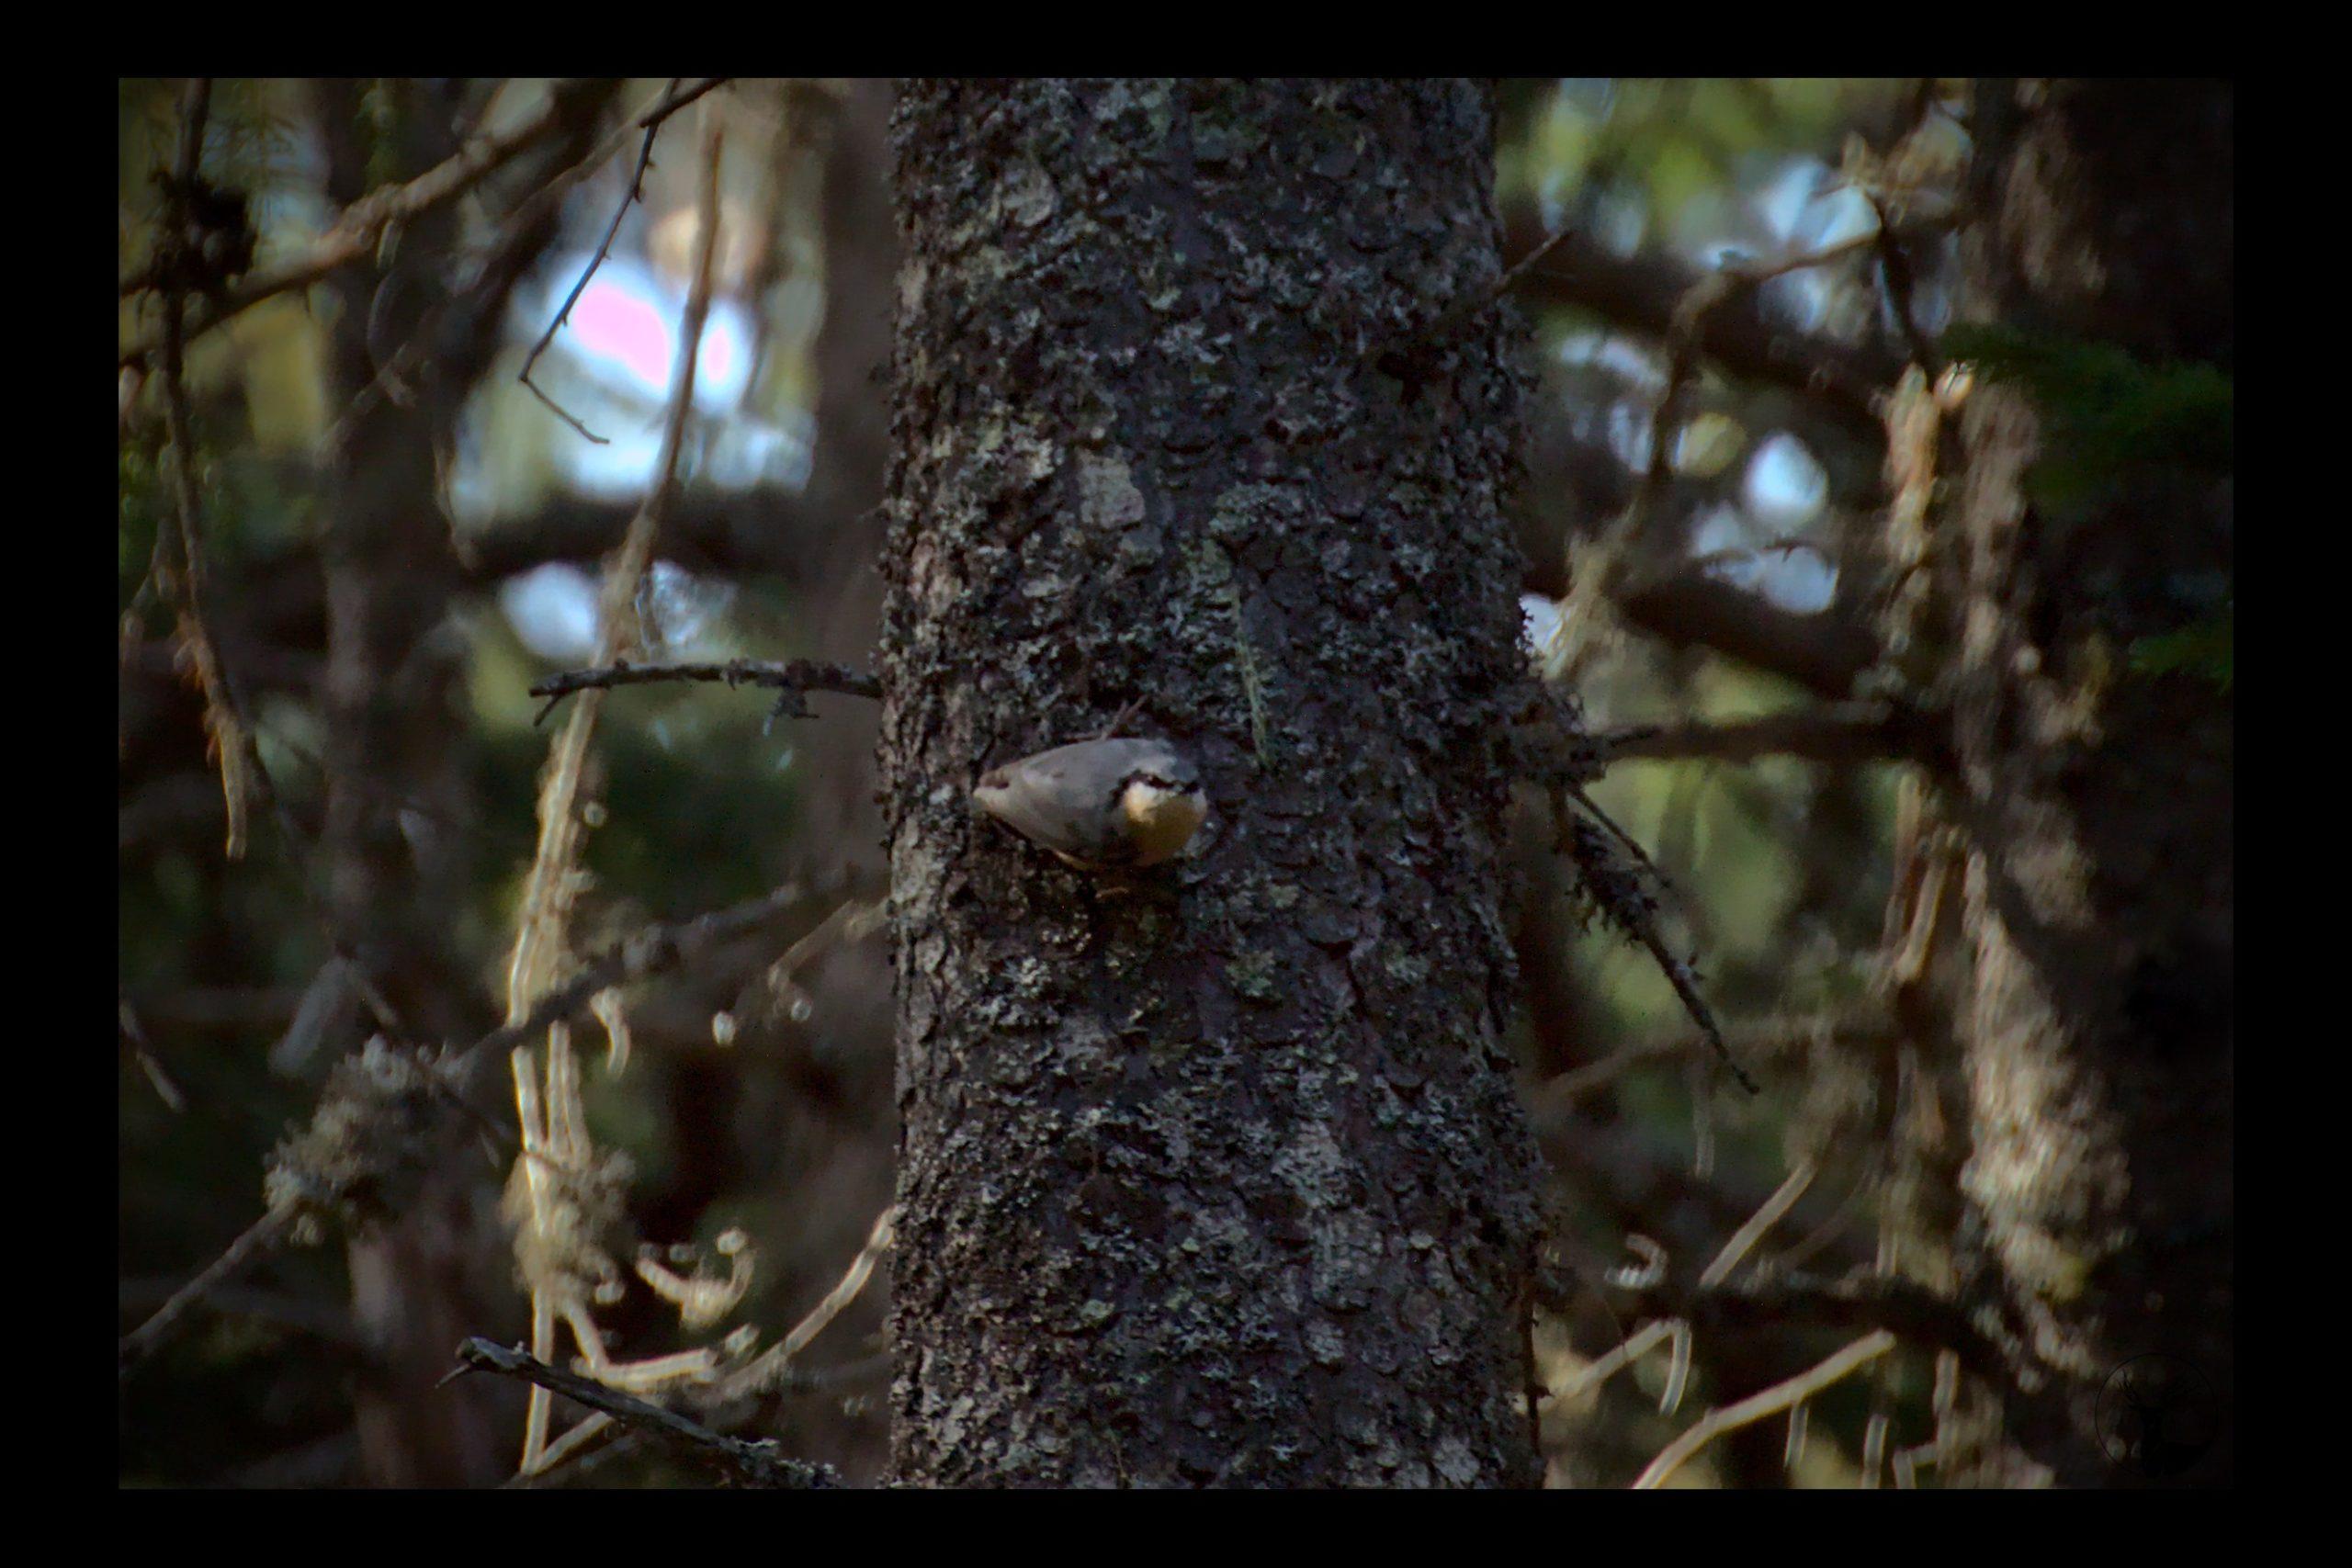 Sittelle torchepot (petit oiseau gris et orangé) sur un tronc pointant son bec vers l'objectif de l'appareil photo